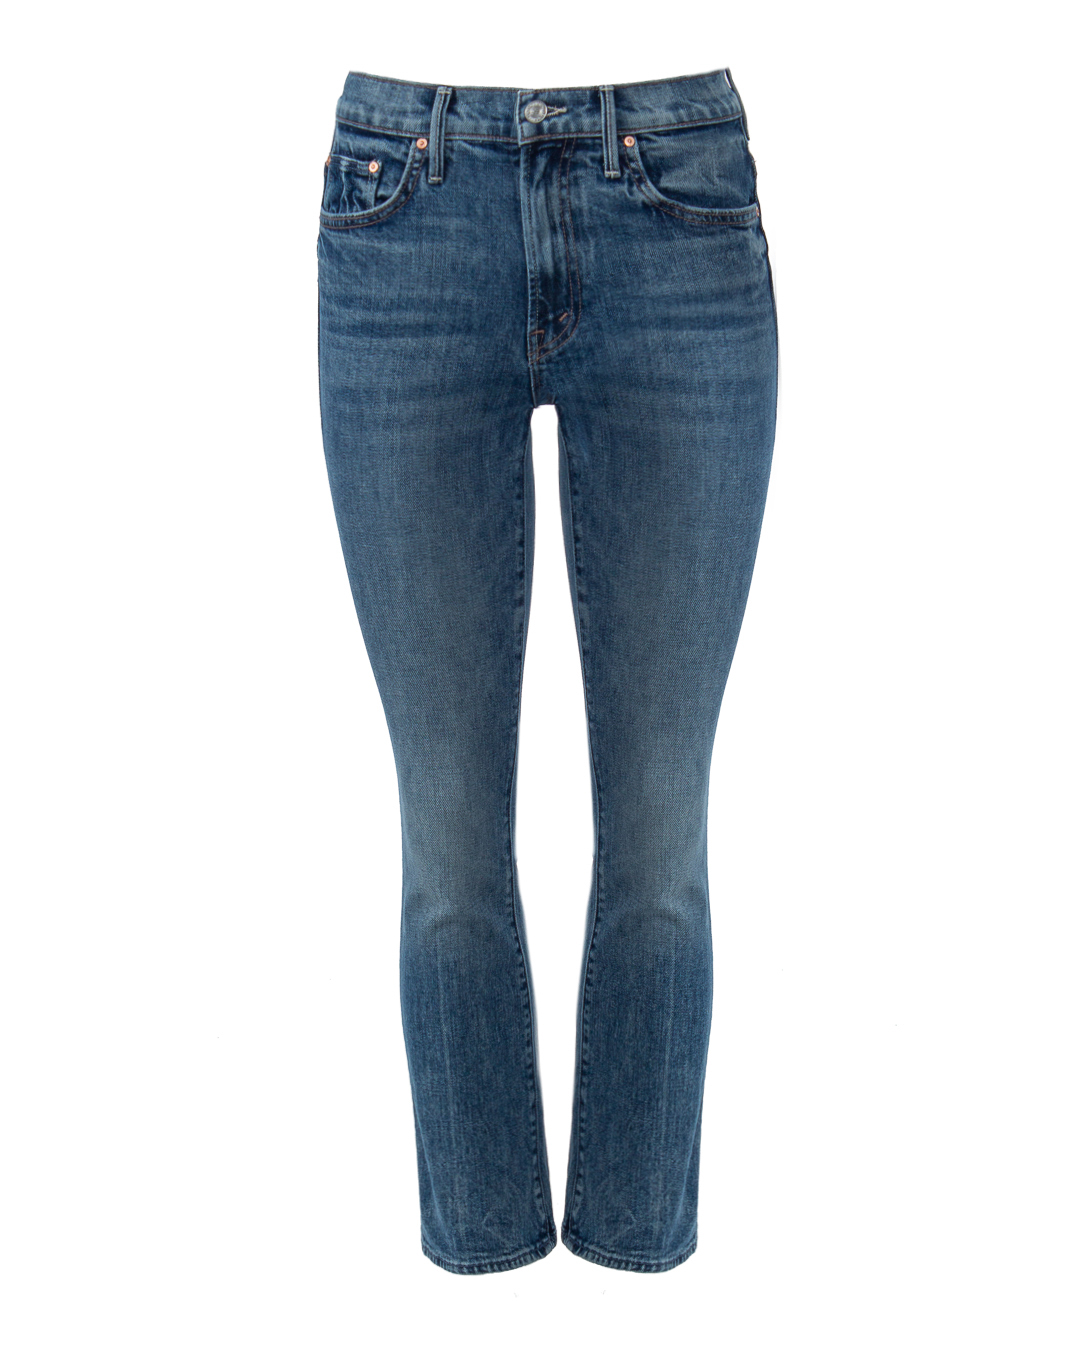 джинсы Mother Denim 1327-259 синий 25, размер 25 - фото 1